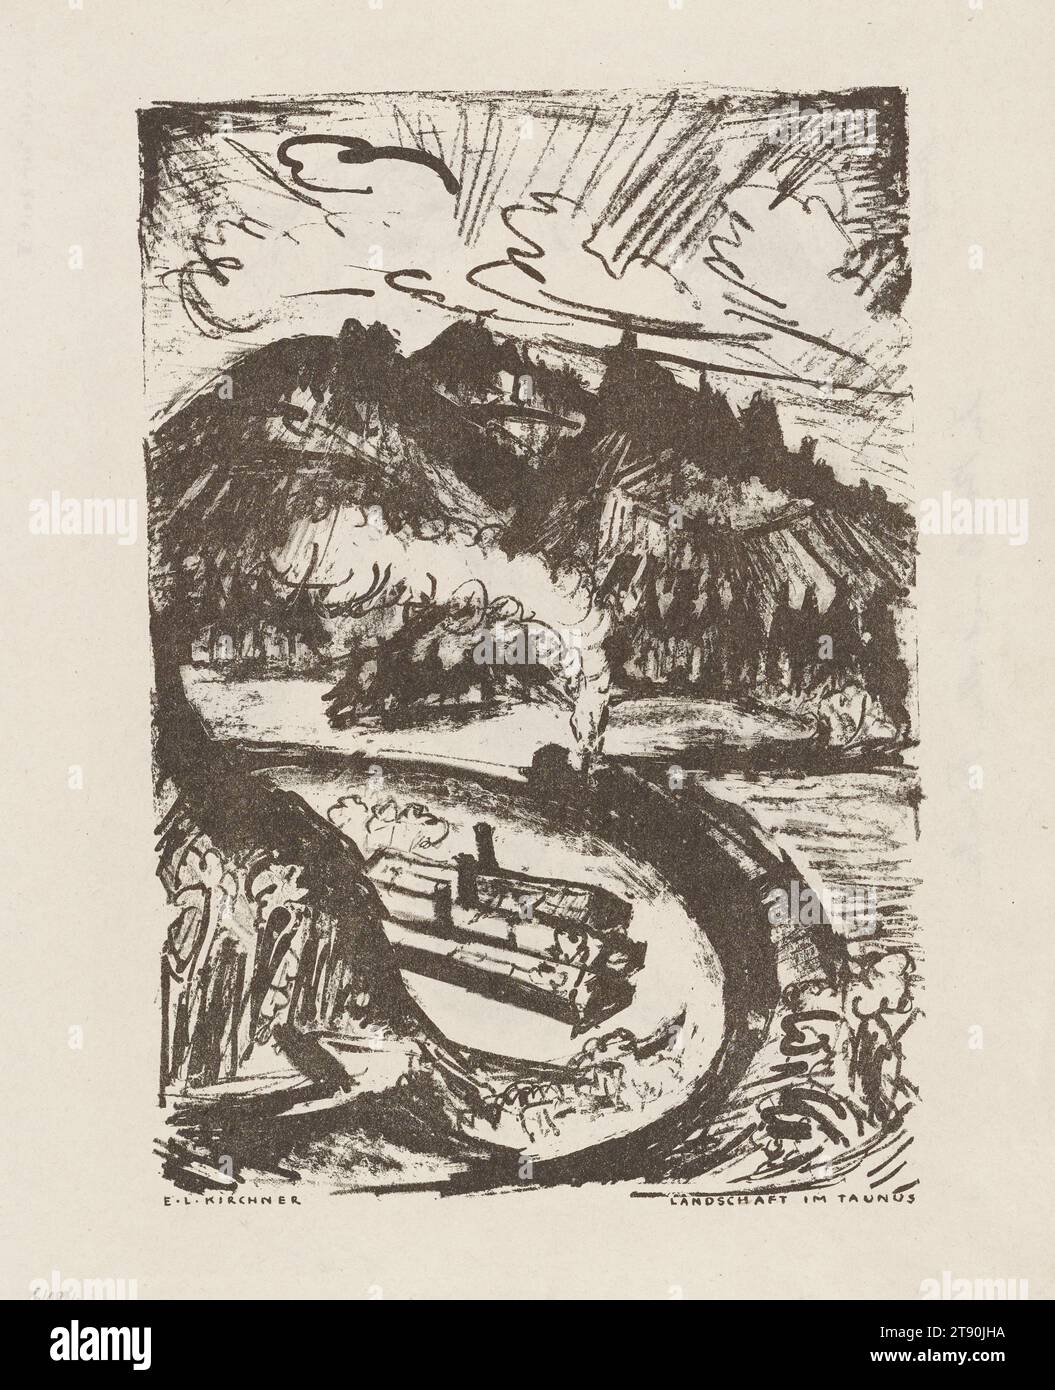 Paesaggio nel Taunus (Landschaft im Taunus) (recto) e segni dei tempi V: In polvere con tutti i nemici (symbole der Zeit V: In Staub mit allen Feinden) (verso), pagina da 'Der Bildermann', folio 13, vol. 1, no. 6, giugno 1916, Ernst Ludwig Kirchner (recto); artista: Max Slevogt (verso); Editore: Galerie Paul Cassirer; Stampatore: M.W. Lassaly, tedesco, 1880–1938, 13 1/2 x 11 in. (34,29 x 27,94 cm) (foglio), litografie, Germania, XX secolo, nel 1916, l'editore Paul Cassirer avviò un nuovo periodico, "Der Bildermann" The Picture Man, "per portare un vasto pubblico direttamente in contatto con l'arte". Foto Stock